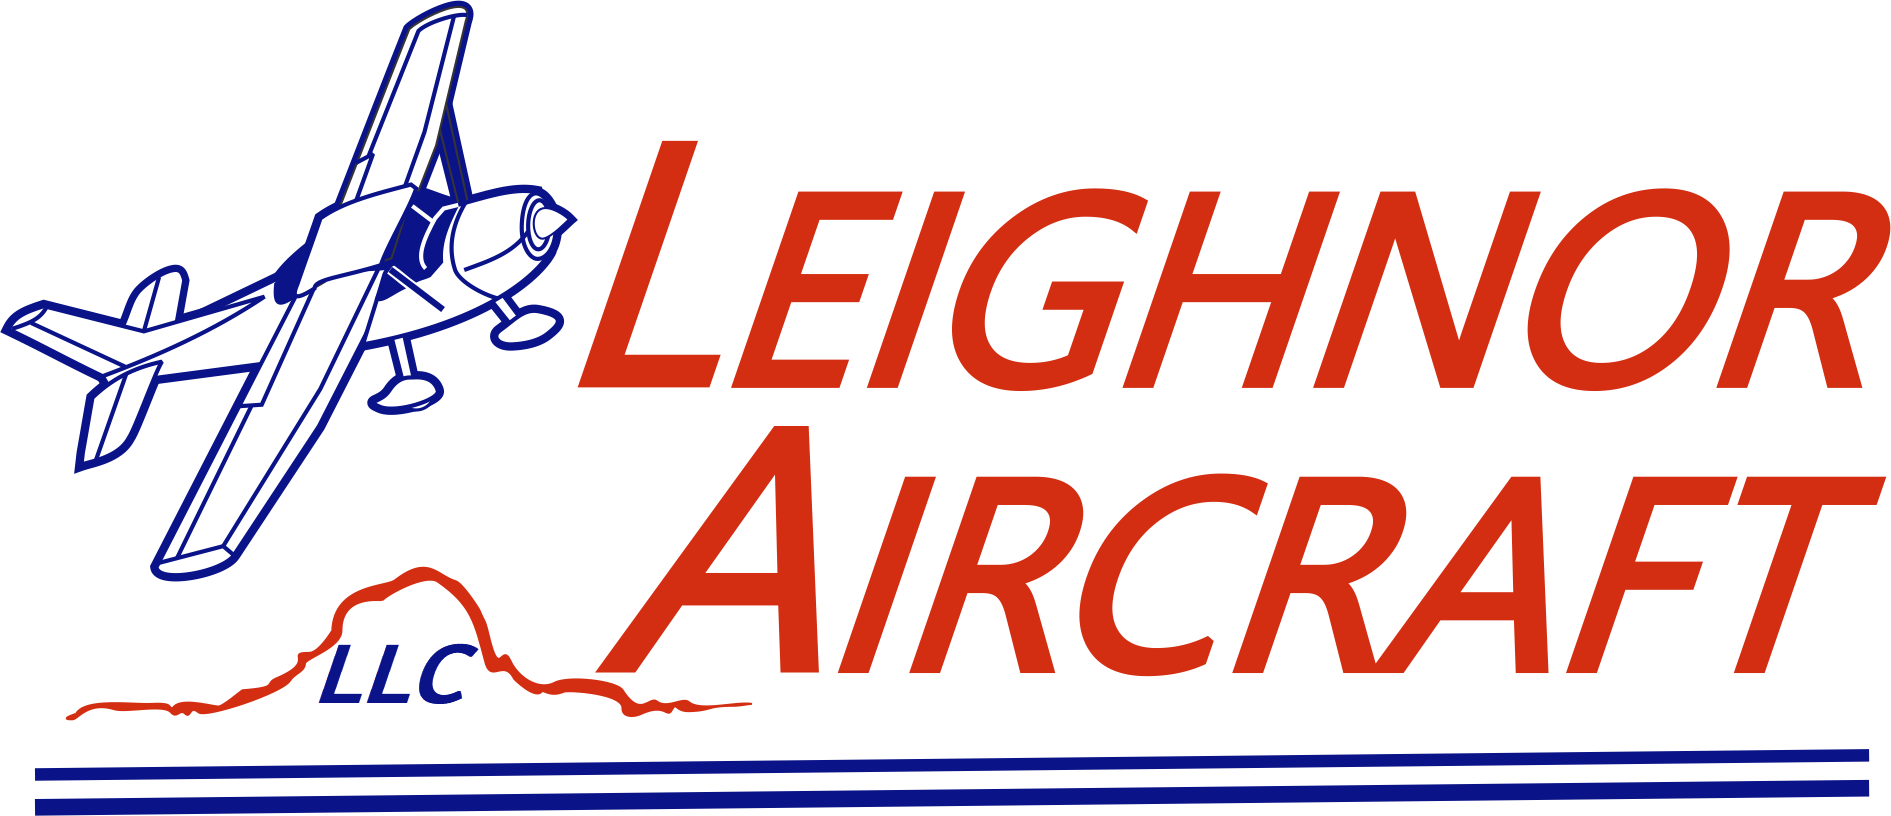 Leighnor Aircraft